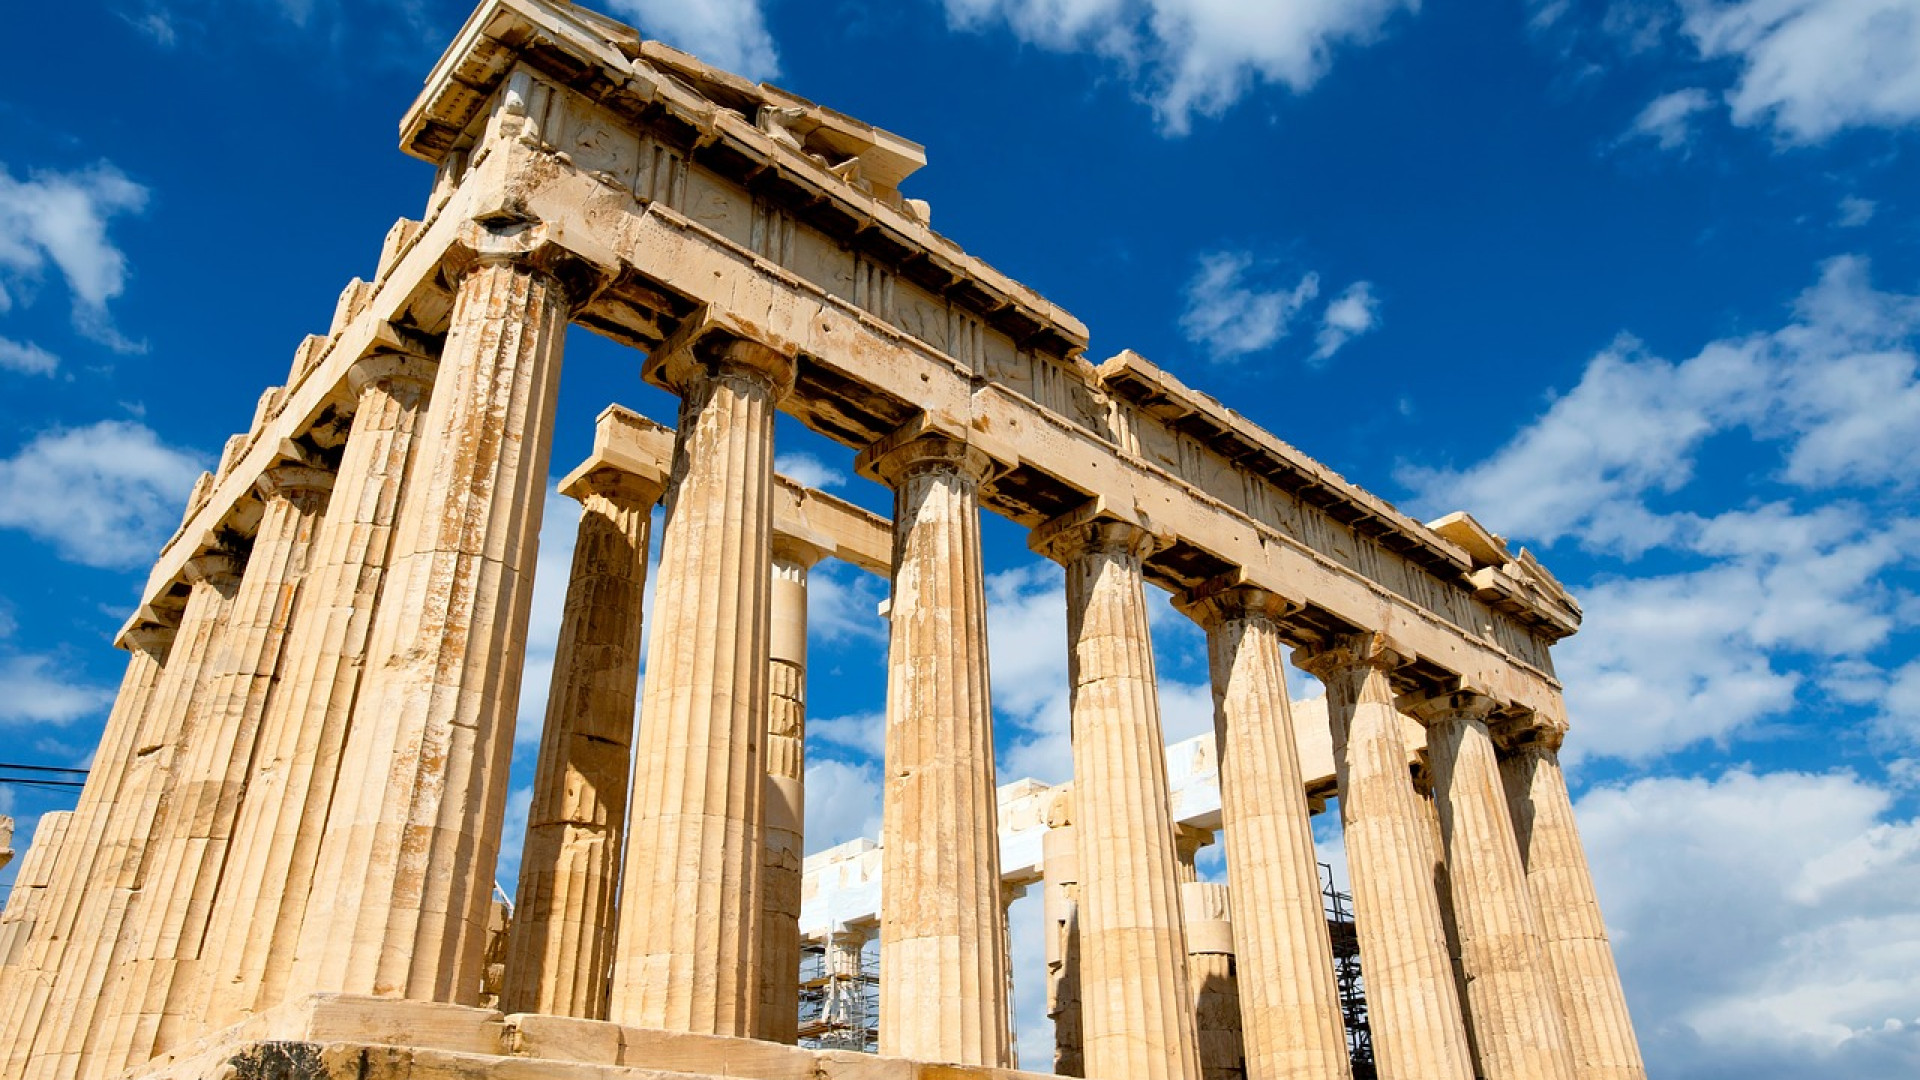 Comment réaliser un voyage en Grèce pas cher ?